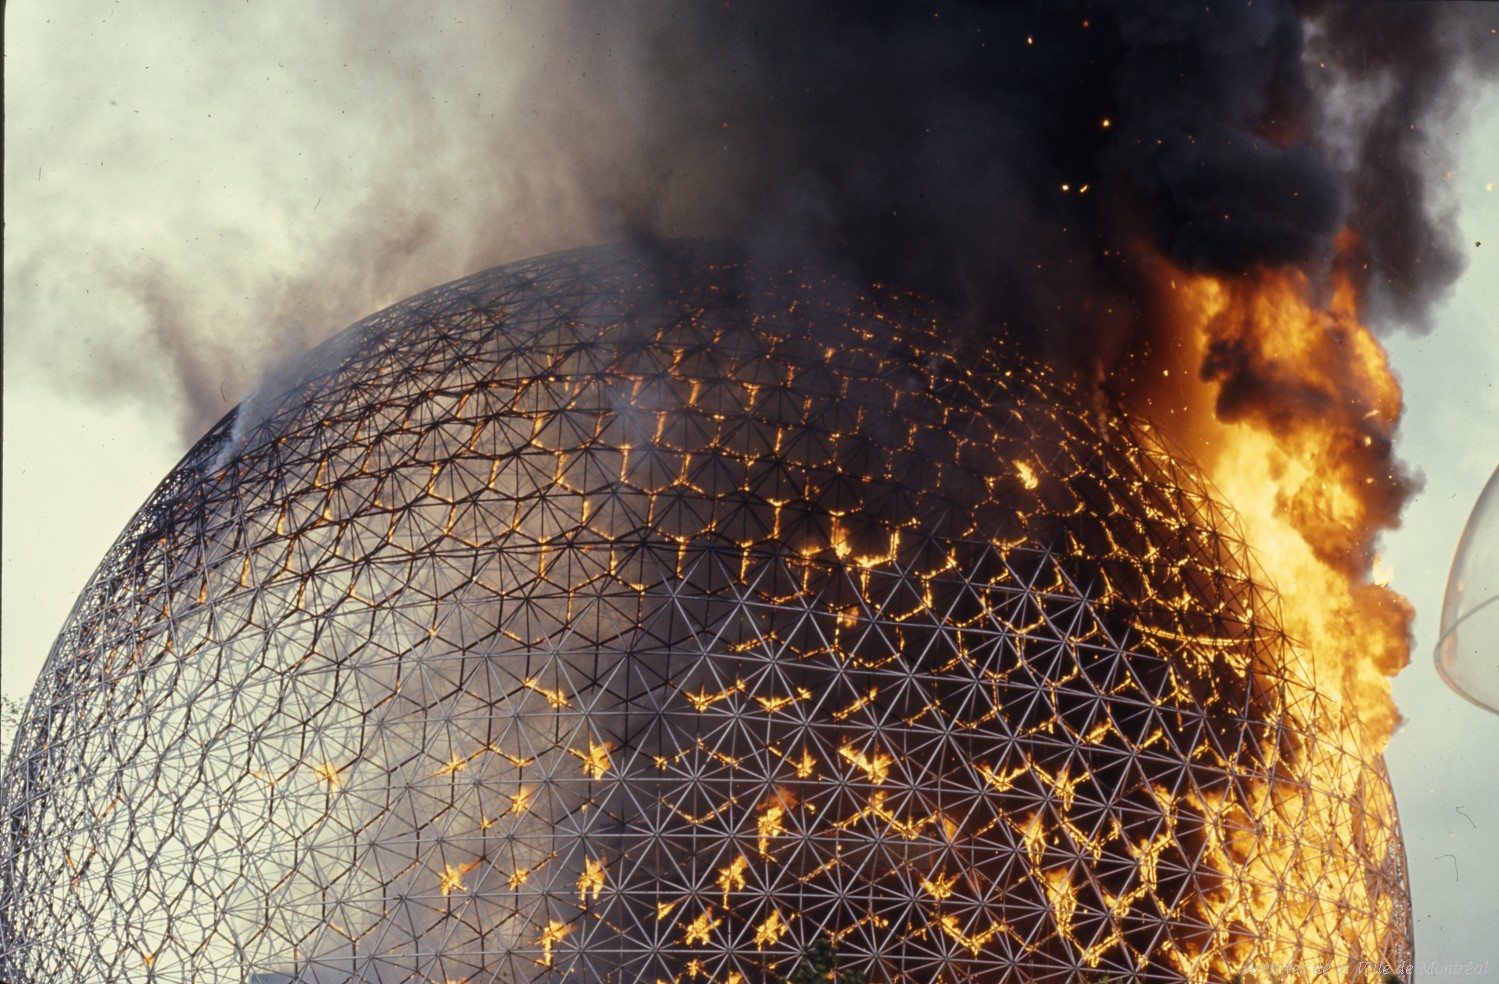 La biosphère en feu (1976). Image d'illustration pour le synopsis de Julien Discrit.
Copyright : ©Archives de la Ville de Montréal
